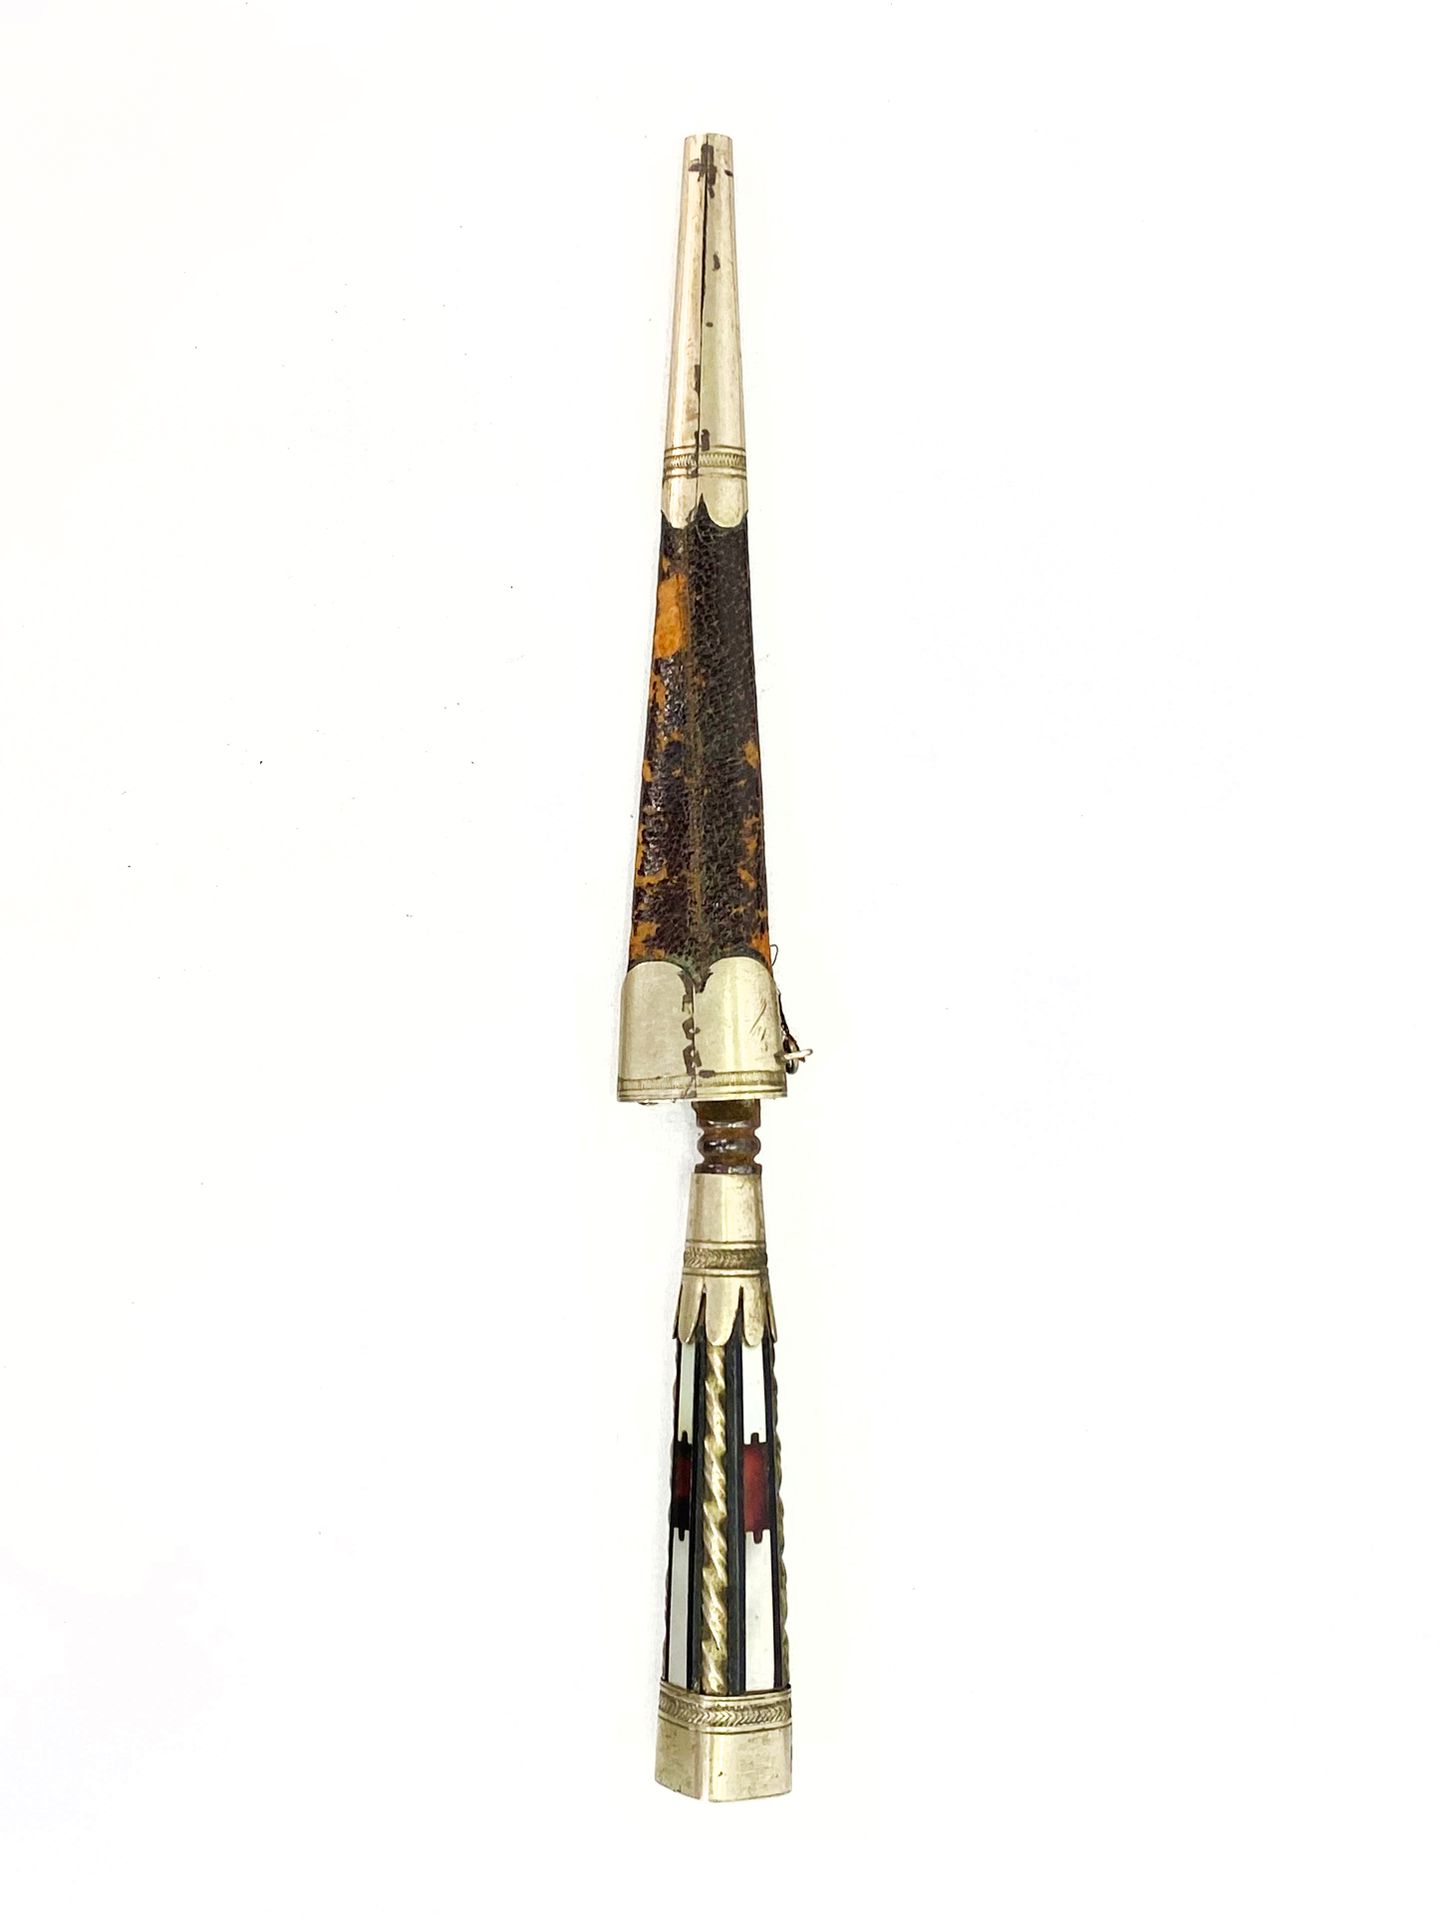 Null 科西嘉人的手写笔。

被称为 "旺达 "触笔。

琢磨过的黑檀木手柄丰富了珍珠母雕刻的叶片和粗犷的金属圆角。

饰有线条和门楣的琢面金属把手。

金属&hellip;